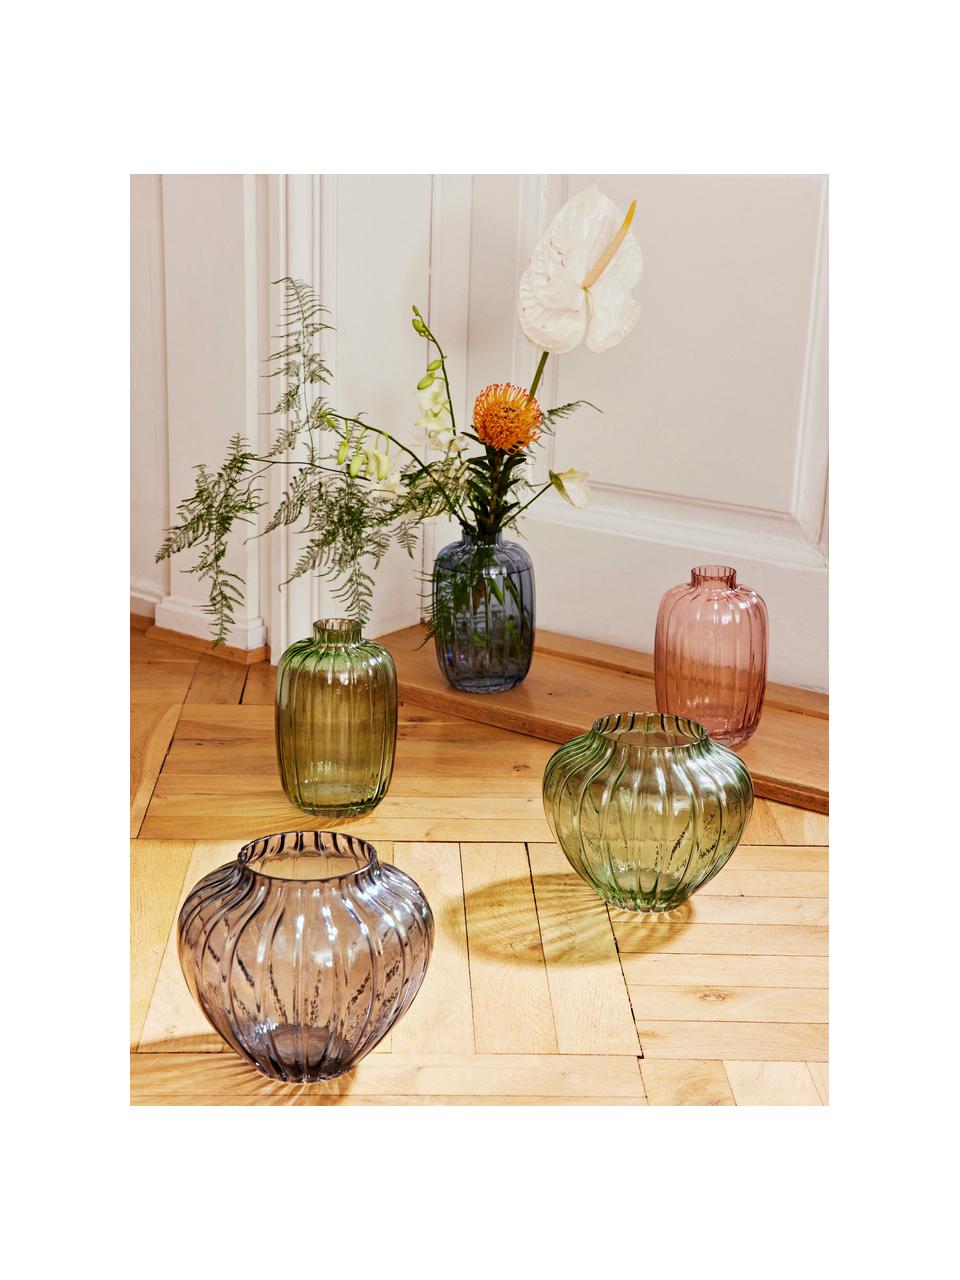 Vaso in vetro grigio Groove, Vetro, Grigio, Ø 20 x Alt. 18 cm